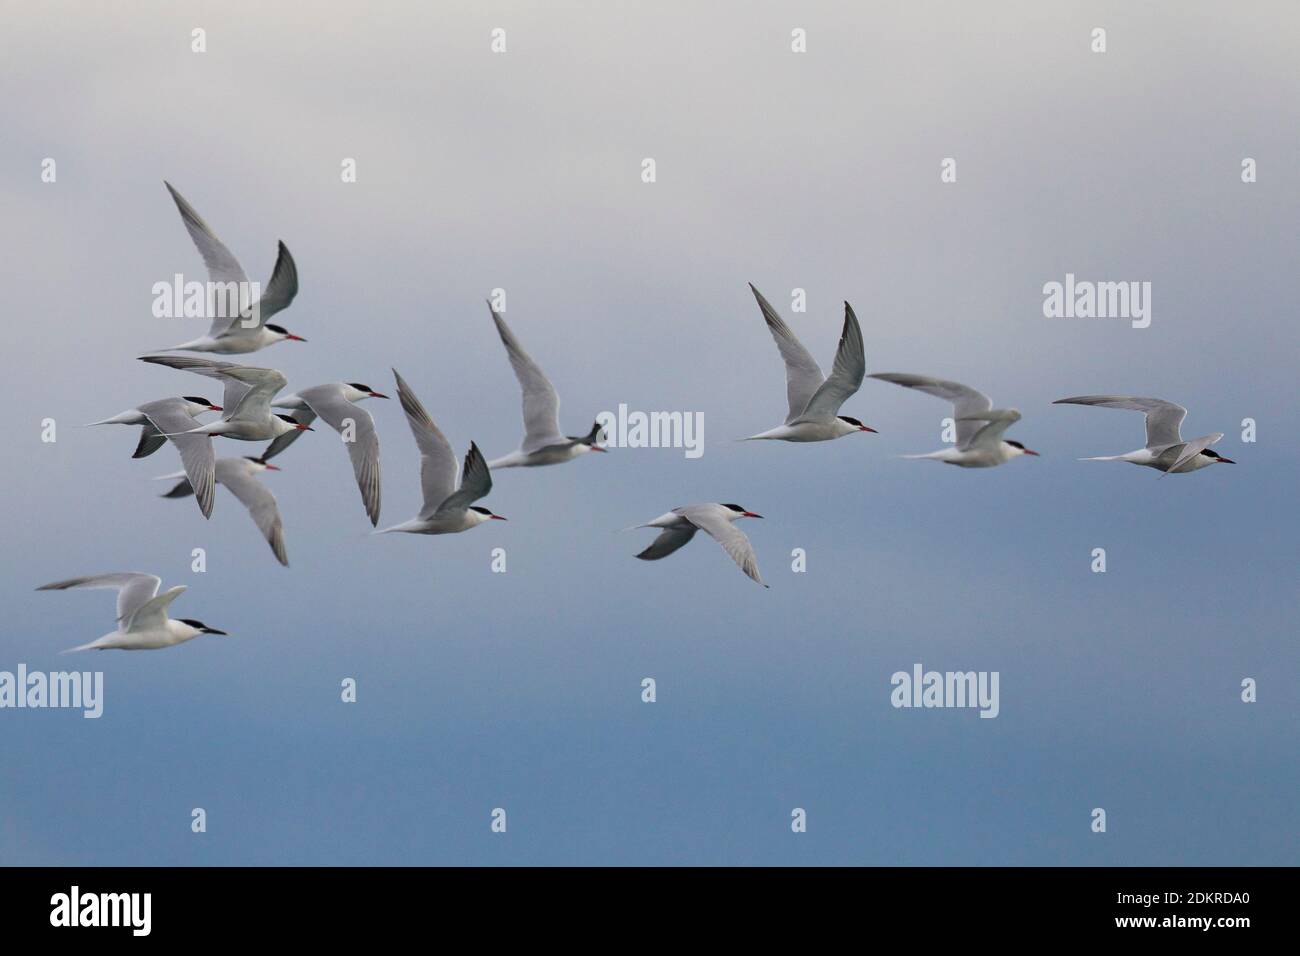 Groep Visdieven in de vlucht; Group of Common Terns in flight Stock Photo